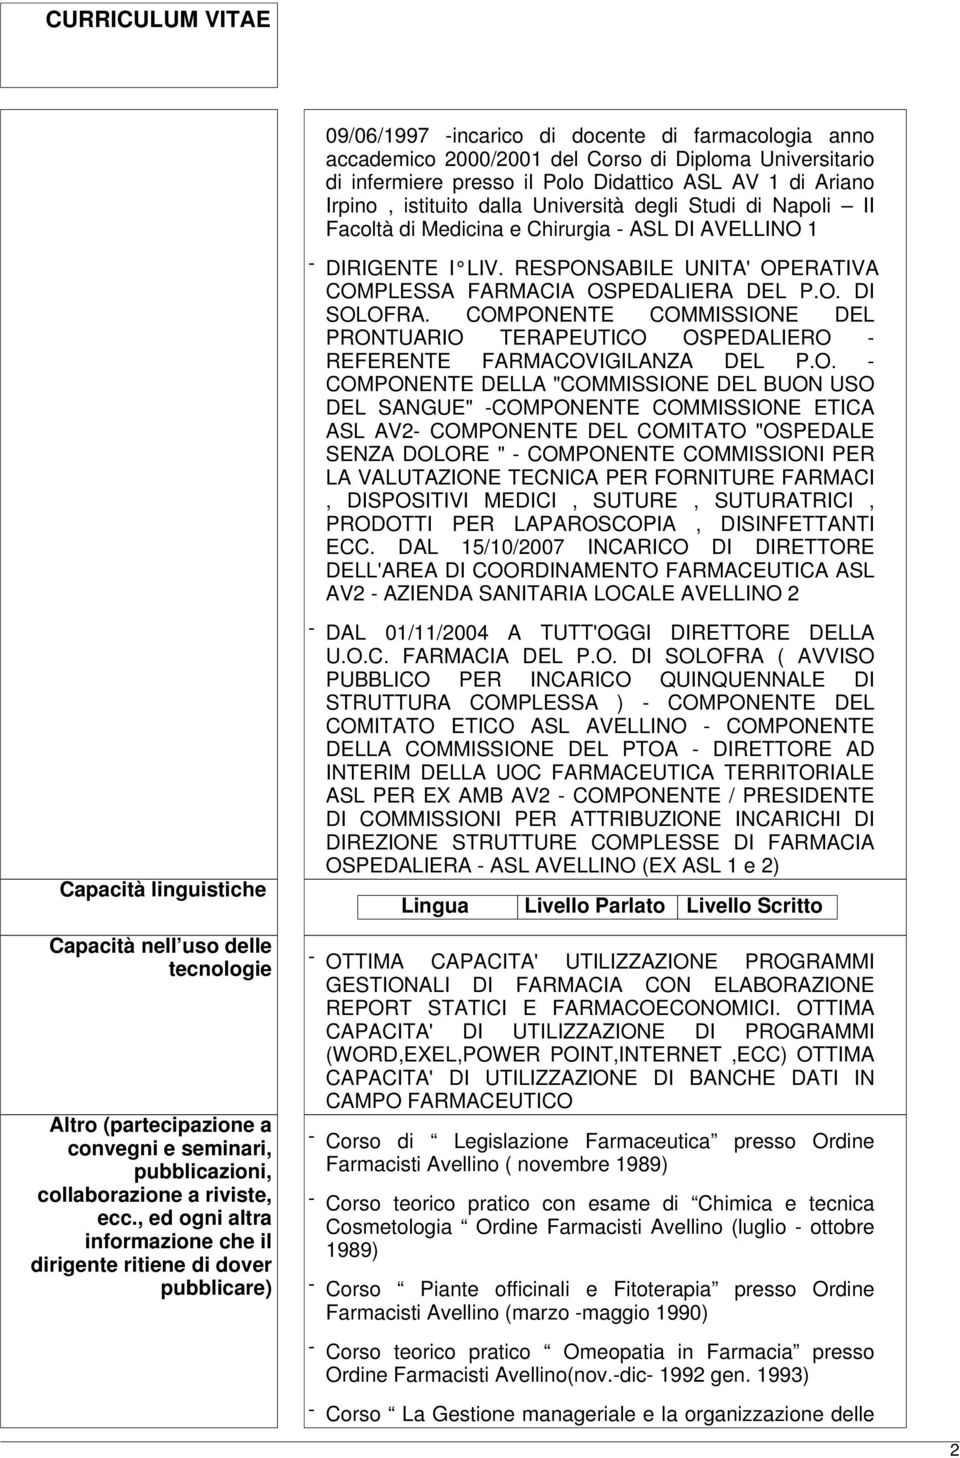 COMPONENTE COMMISSIONE DEL PRONTUARIO TERAPEUTICO OSPEDALIERO - REFERENTE FARMACOVIGILANZA DEL P.O. - COMPONENTE DELLA "COMMISSIONE DEL BUON USO DEL SANGUE" -COMPONENTE COMMISSIONE ETICA ASL AV2-